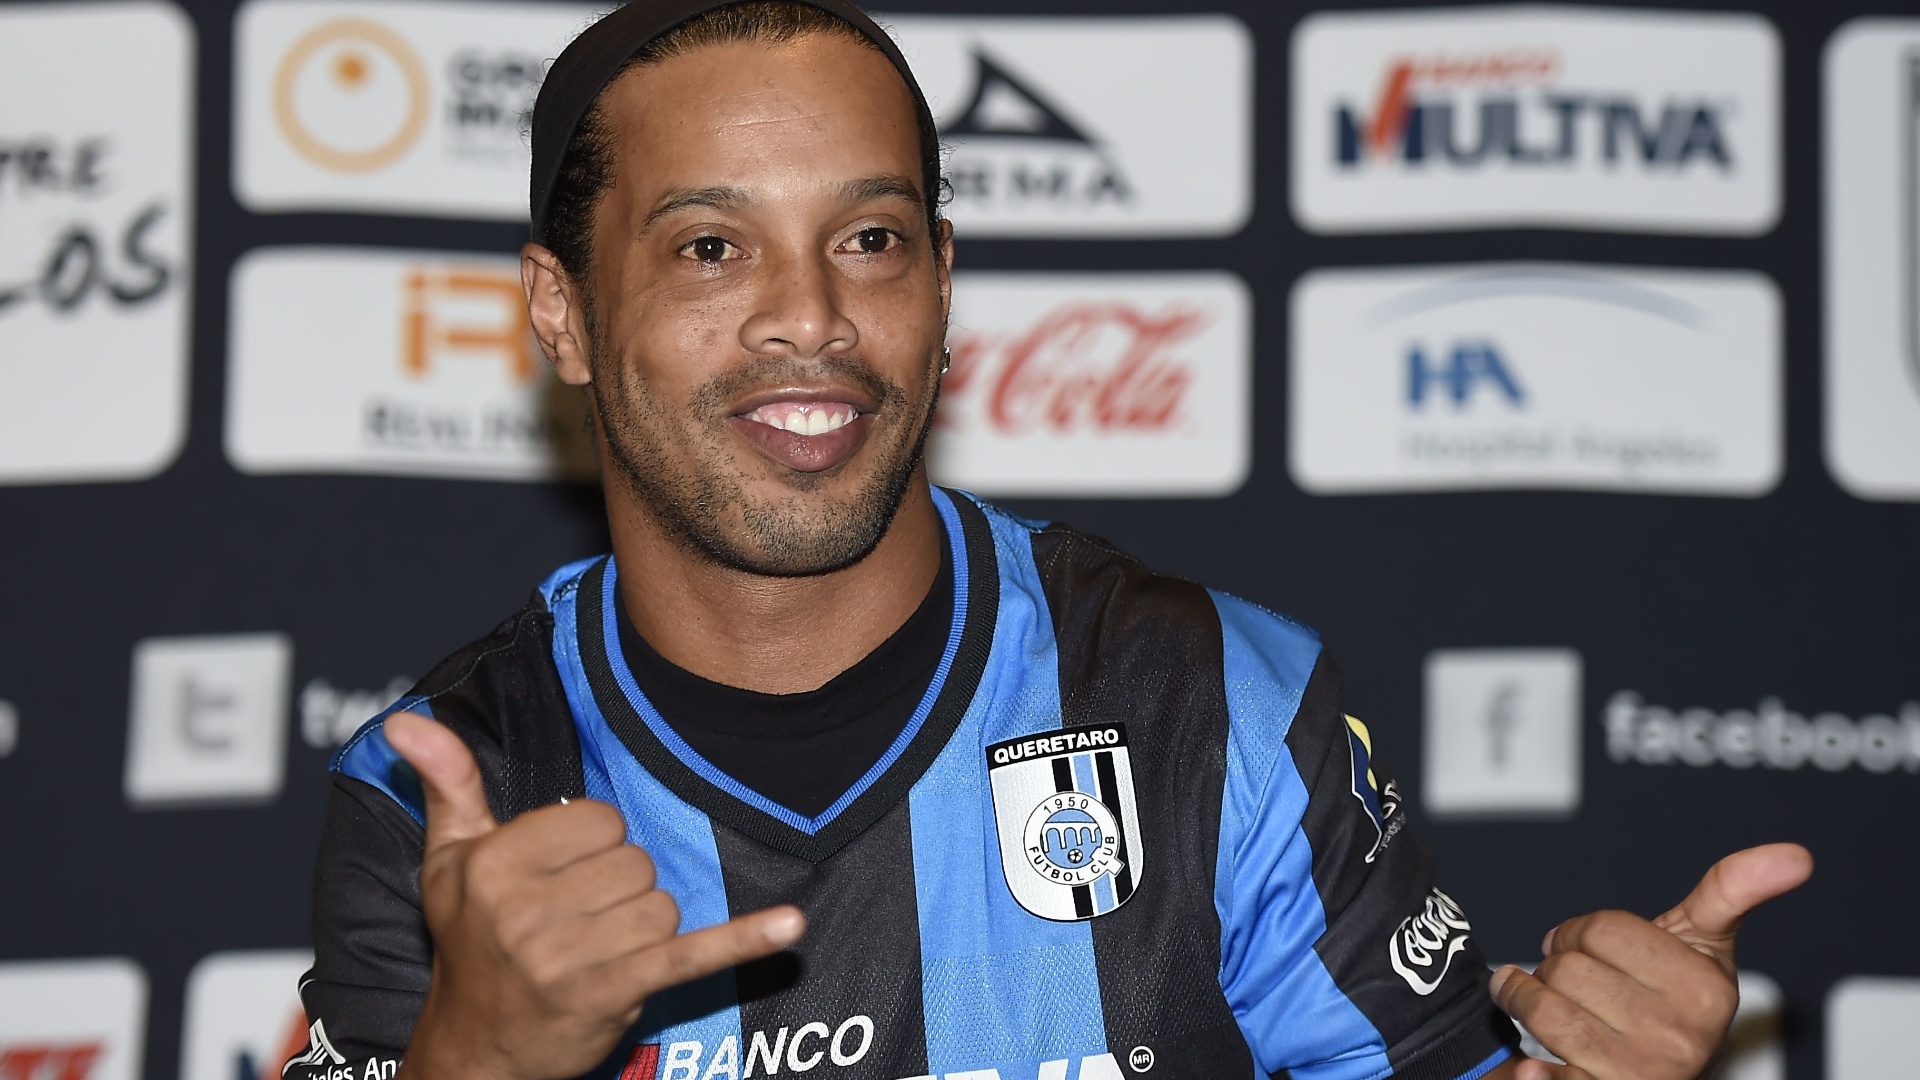 Resultado de imagem para Ronaldinho Gaúcho